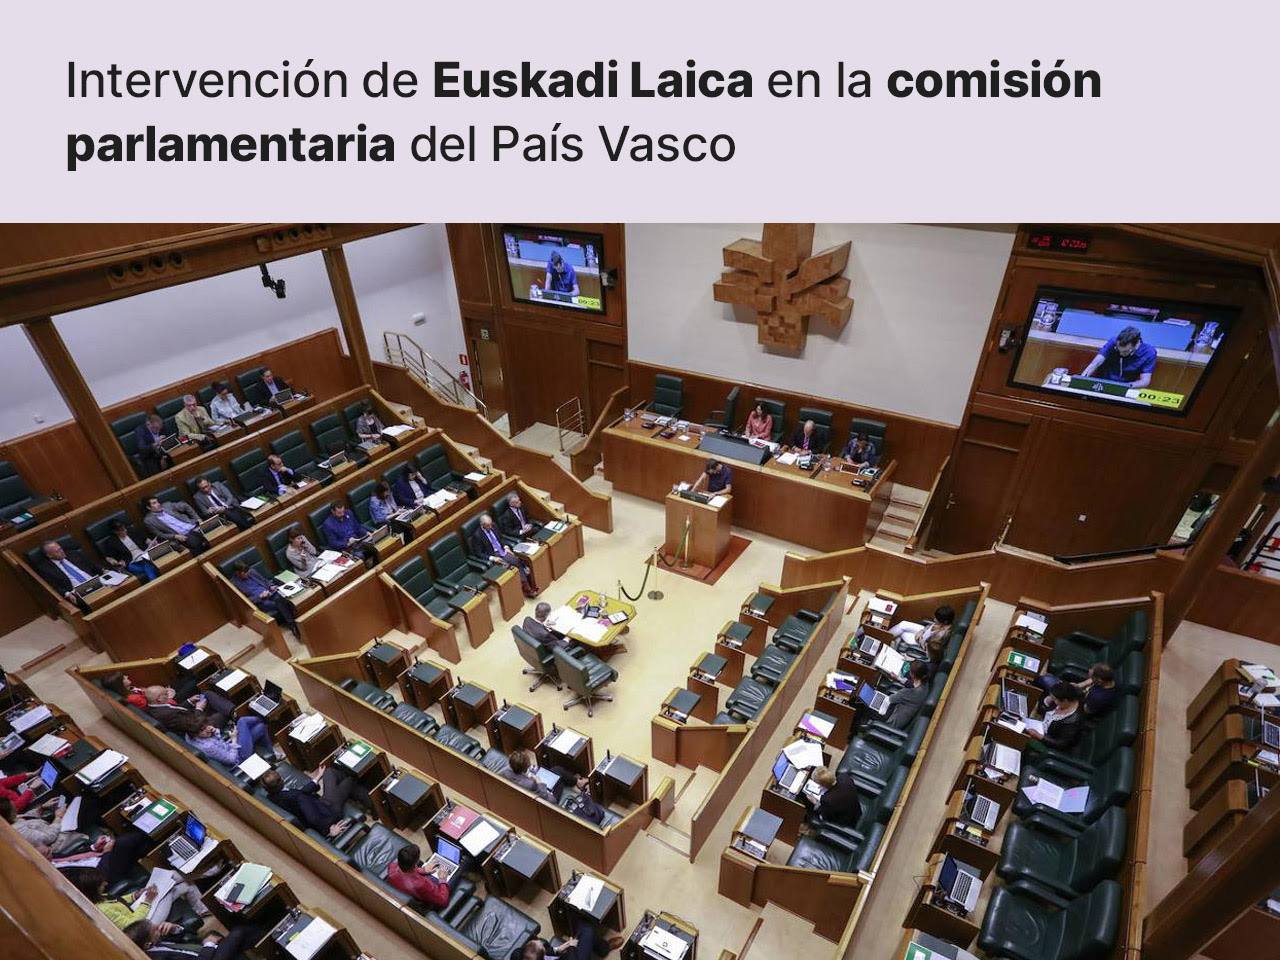 Intervención en la comisión parlamentaria de Mikel González, del grupo Euskadi Laikoa de Europa Laica